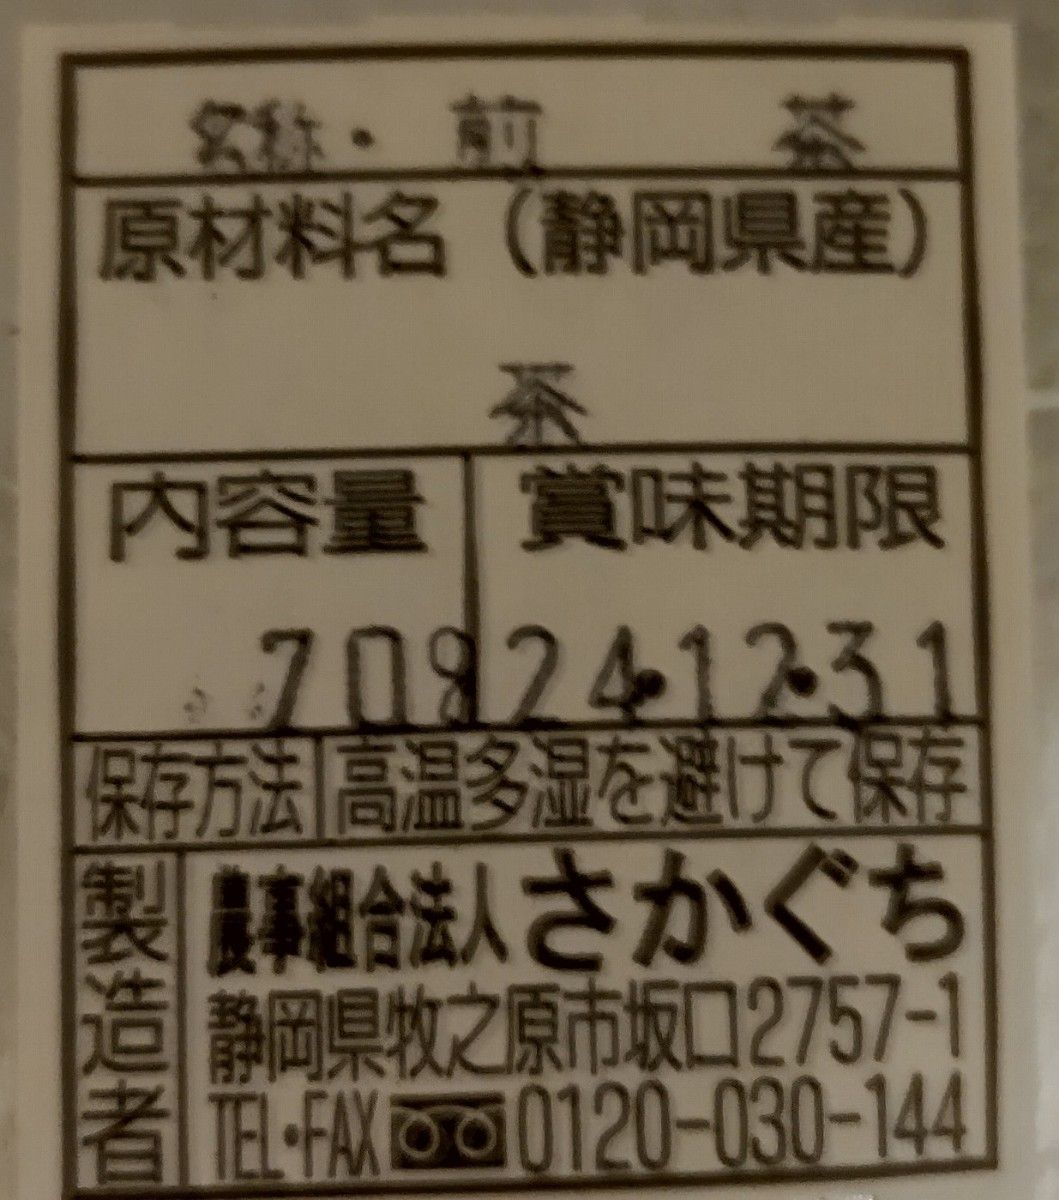 ★静岡県牧之原市産煎茶二番茶葉使用 平袋70g